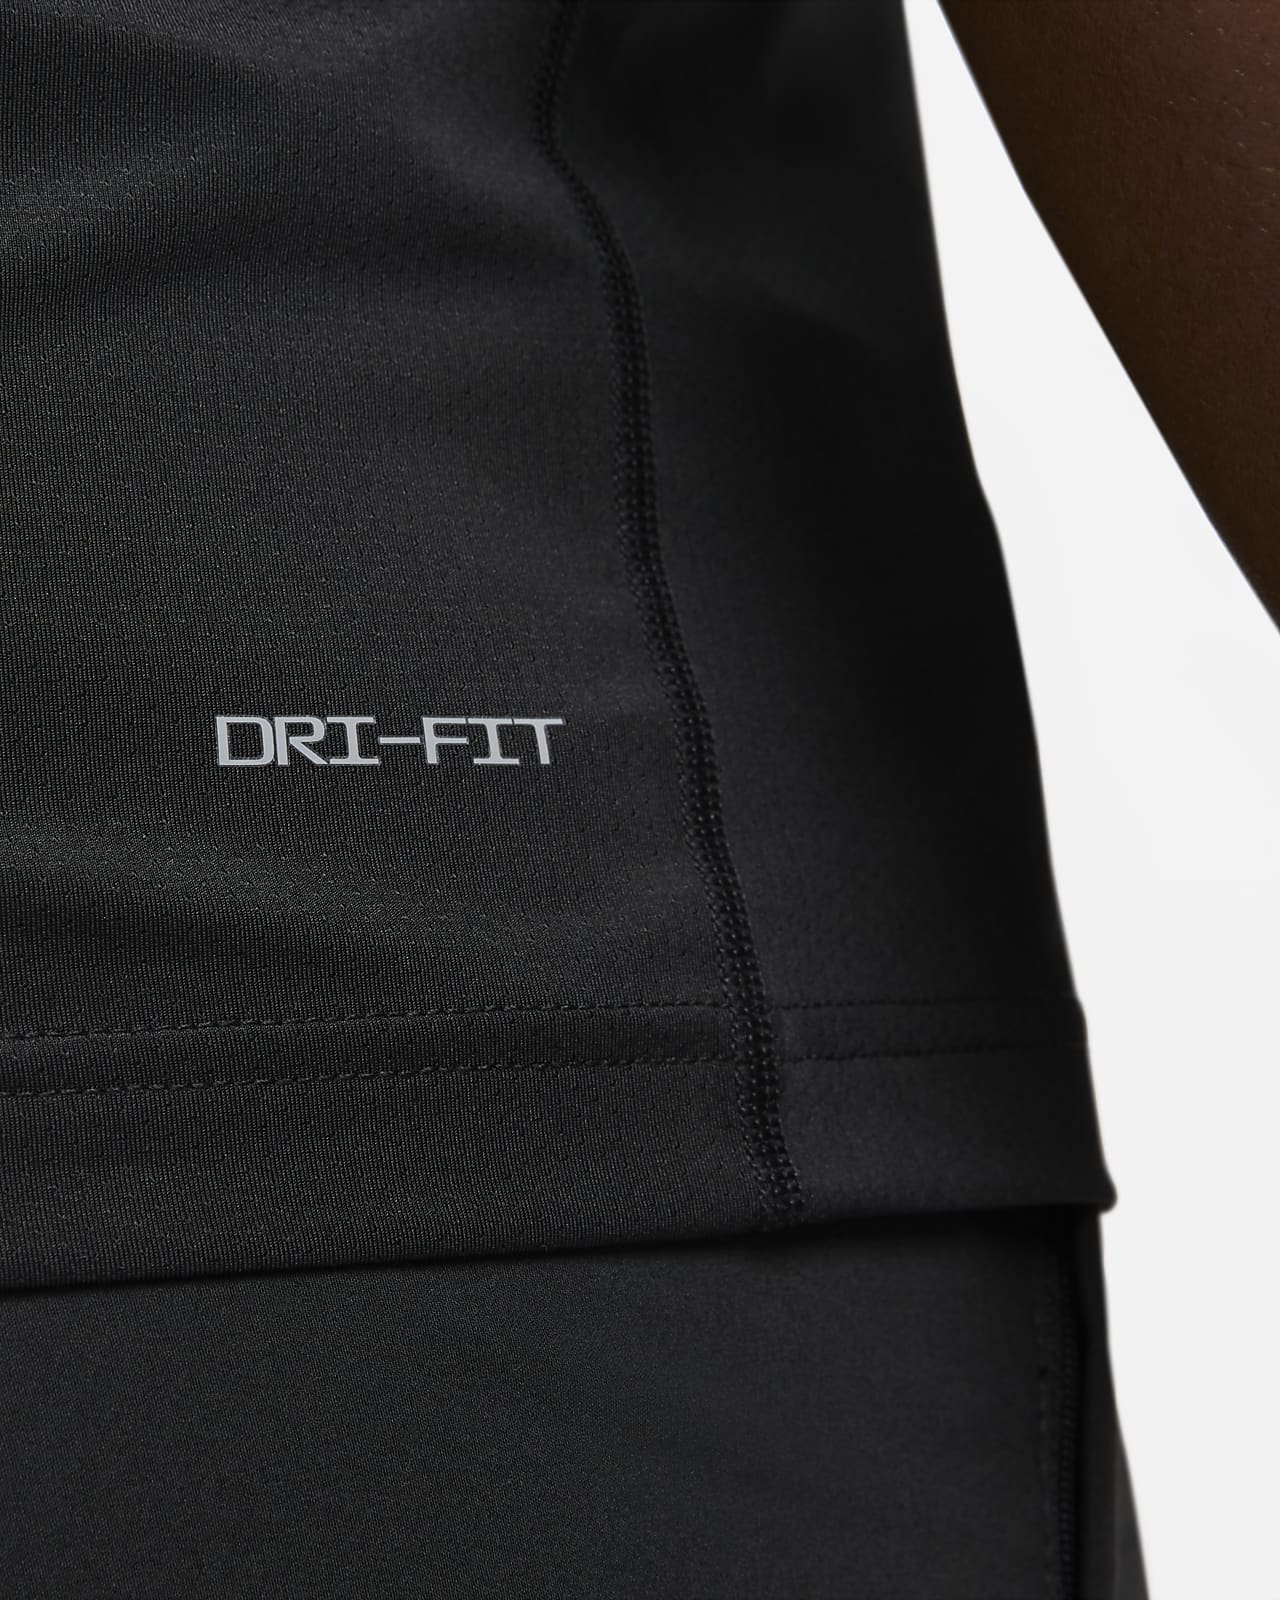 Haut de fitness sans manches en tissu Fleece Nike Dri-FIT pour homme